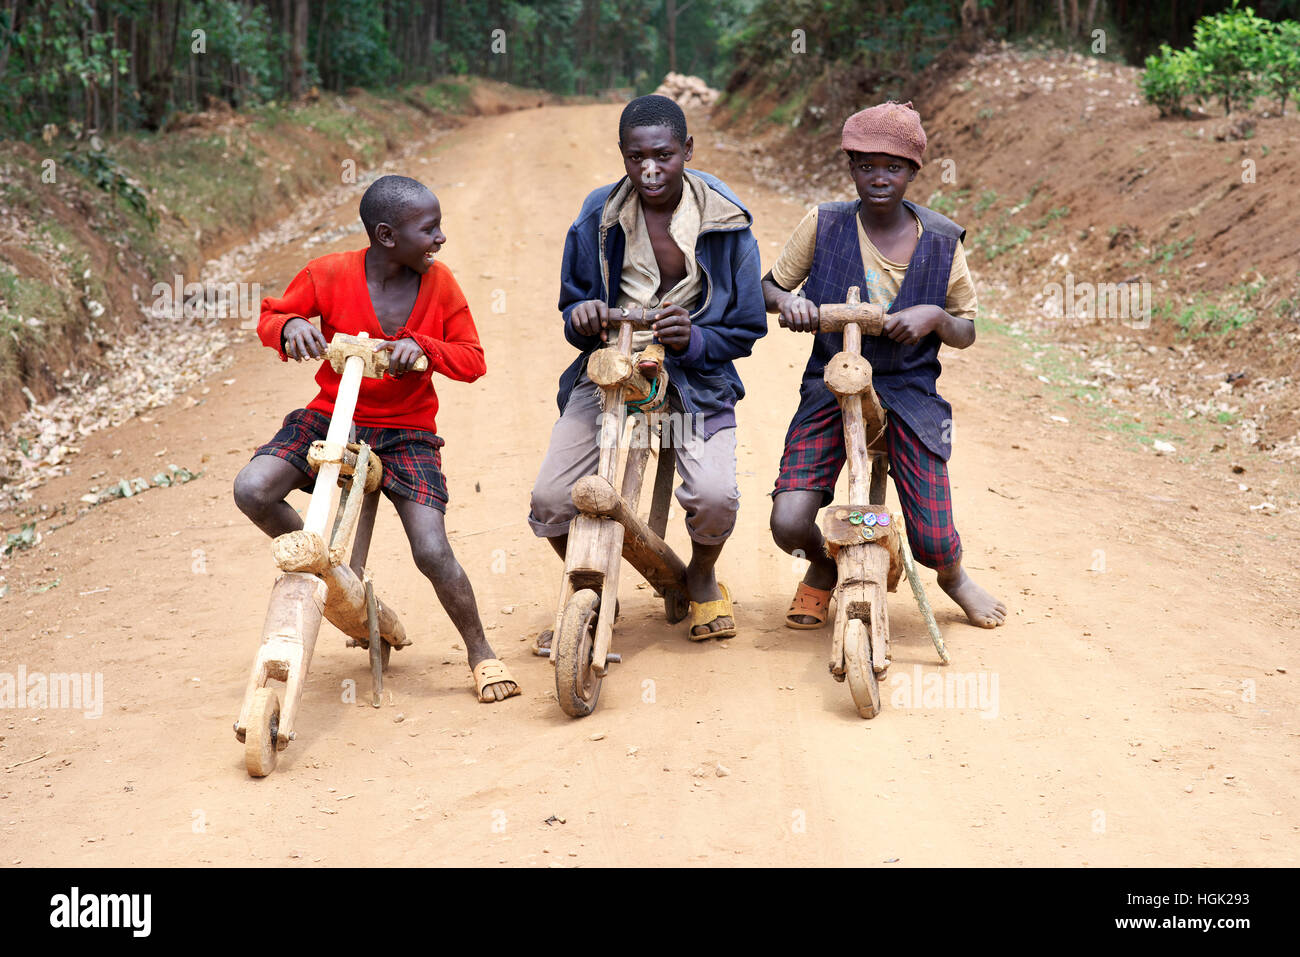 Tres niños ugandeses posan para una fotografía sobre sus bicicletas de madera en el África rural. Foto de stock